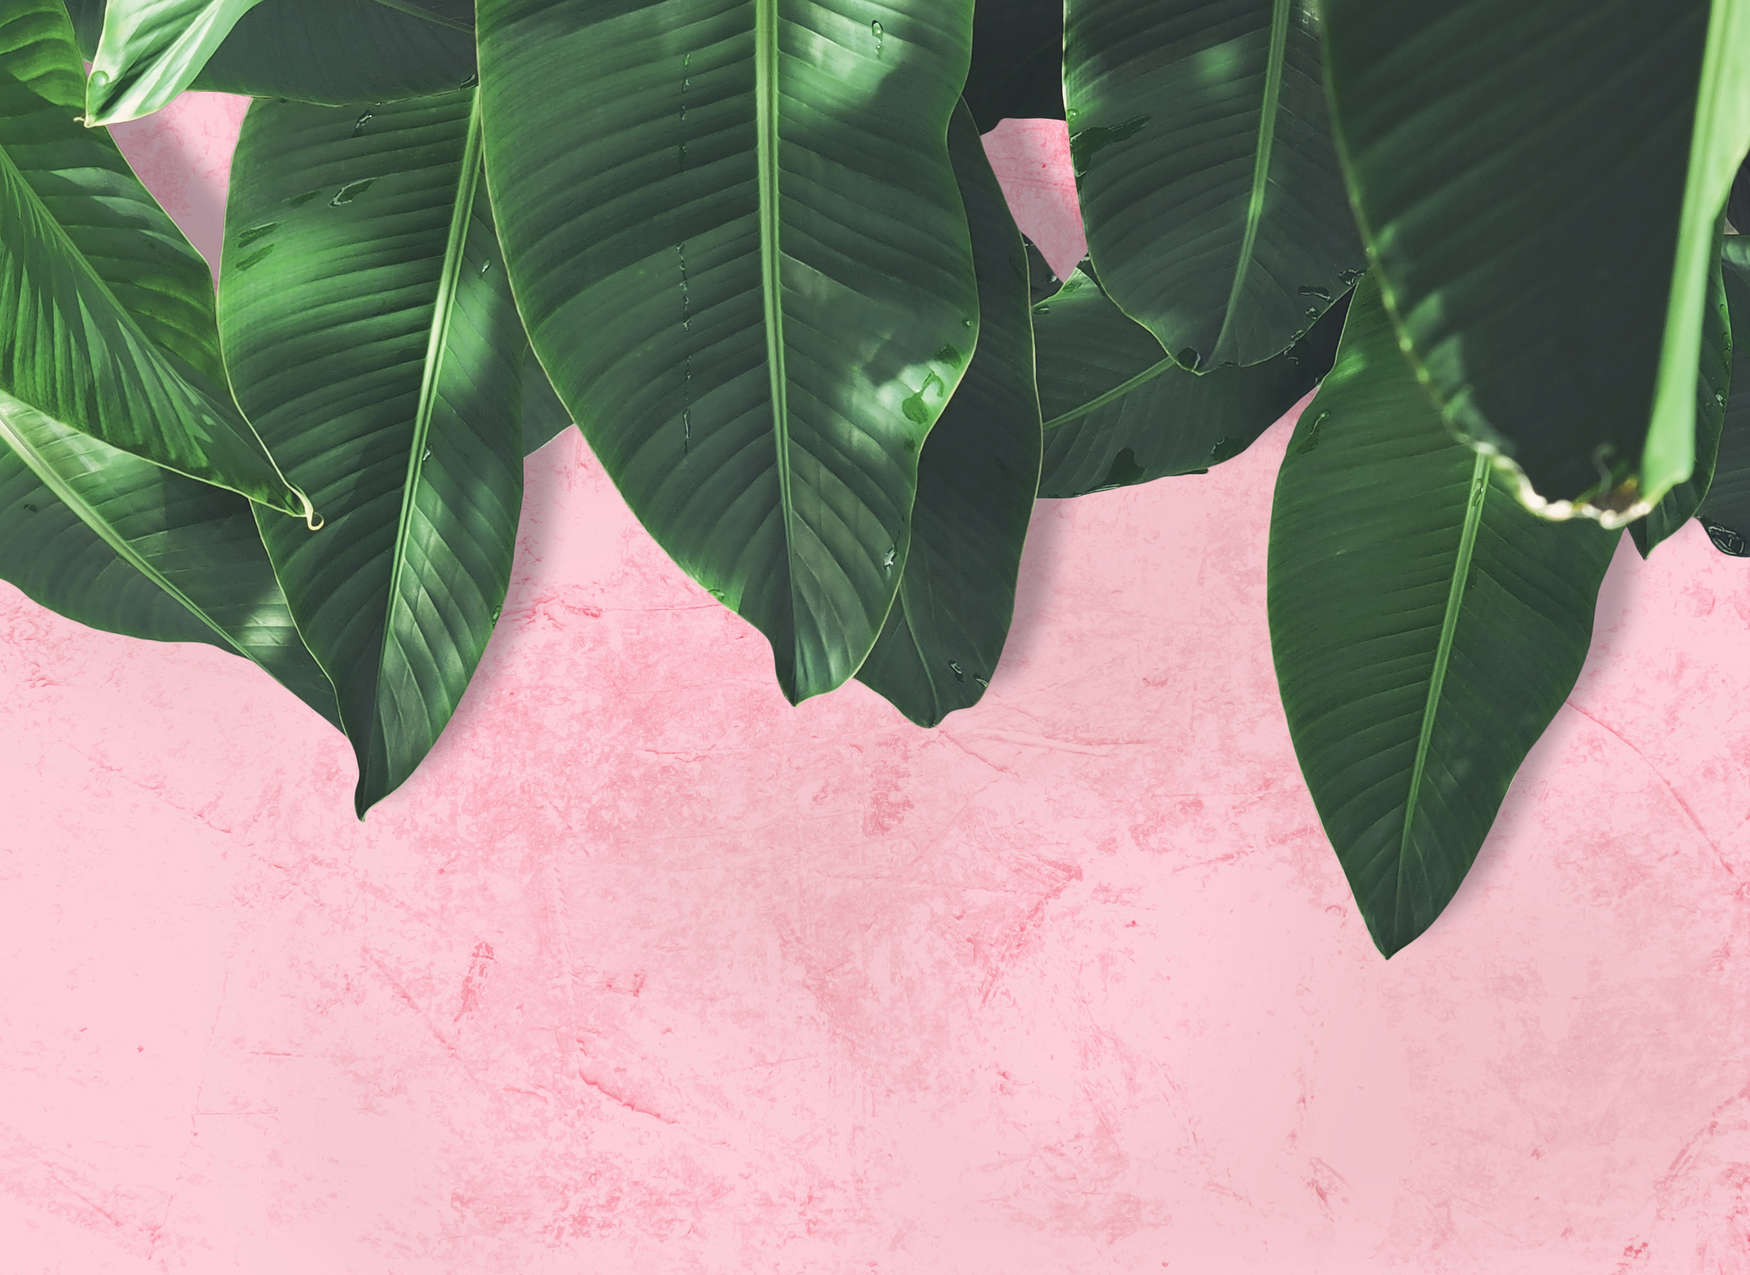             Digital behang tropisch gebladerte - Roze, Groen
        